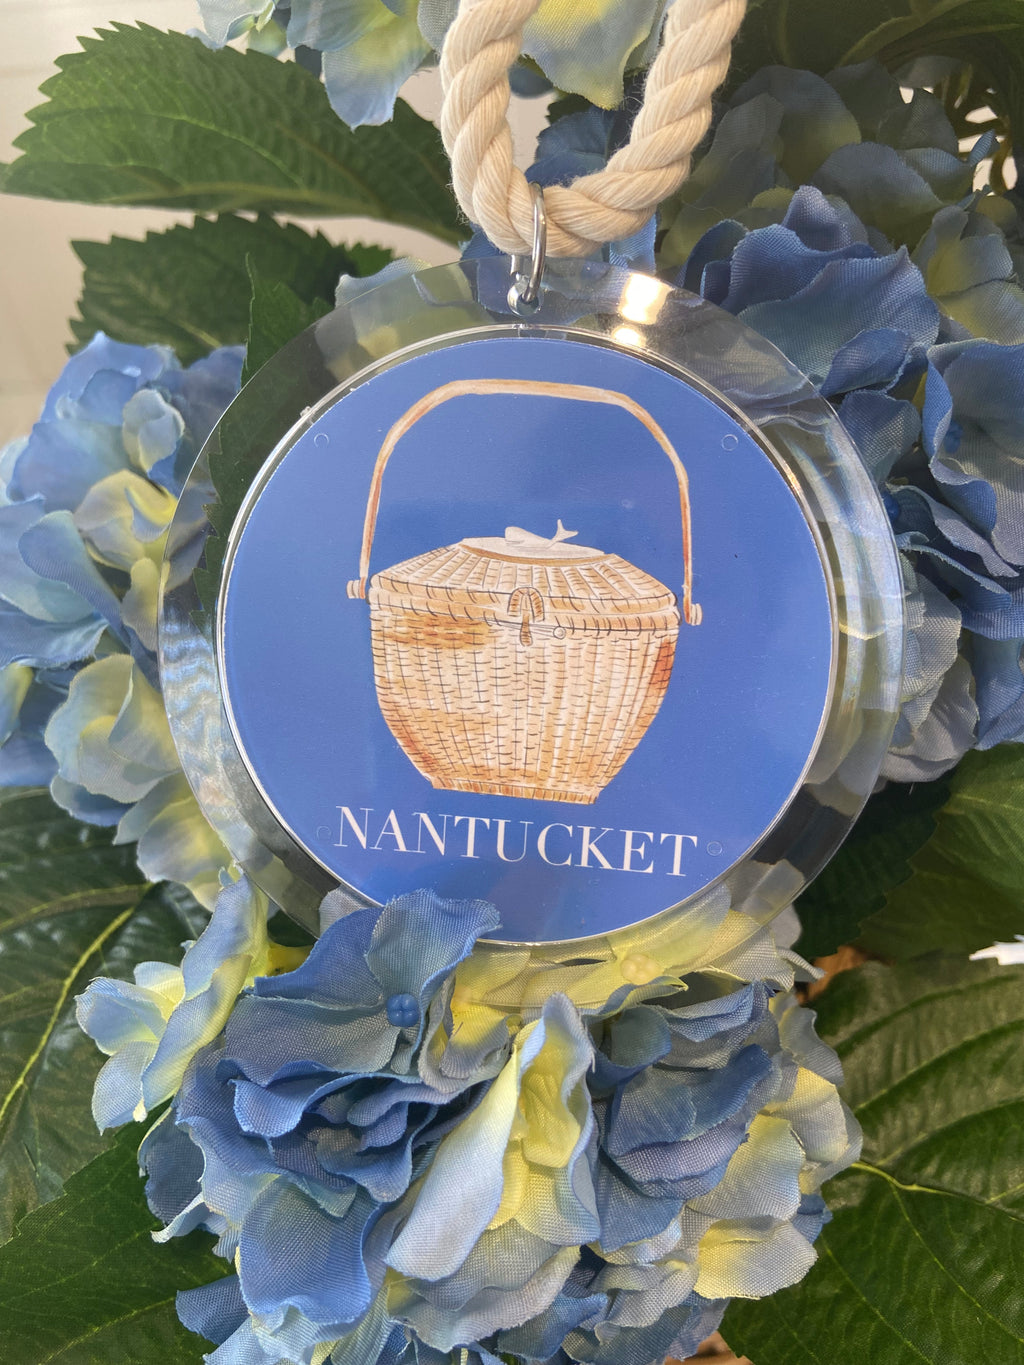 Nantucket Lightship Basket Ornament